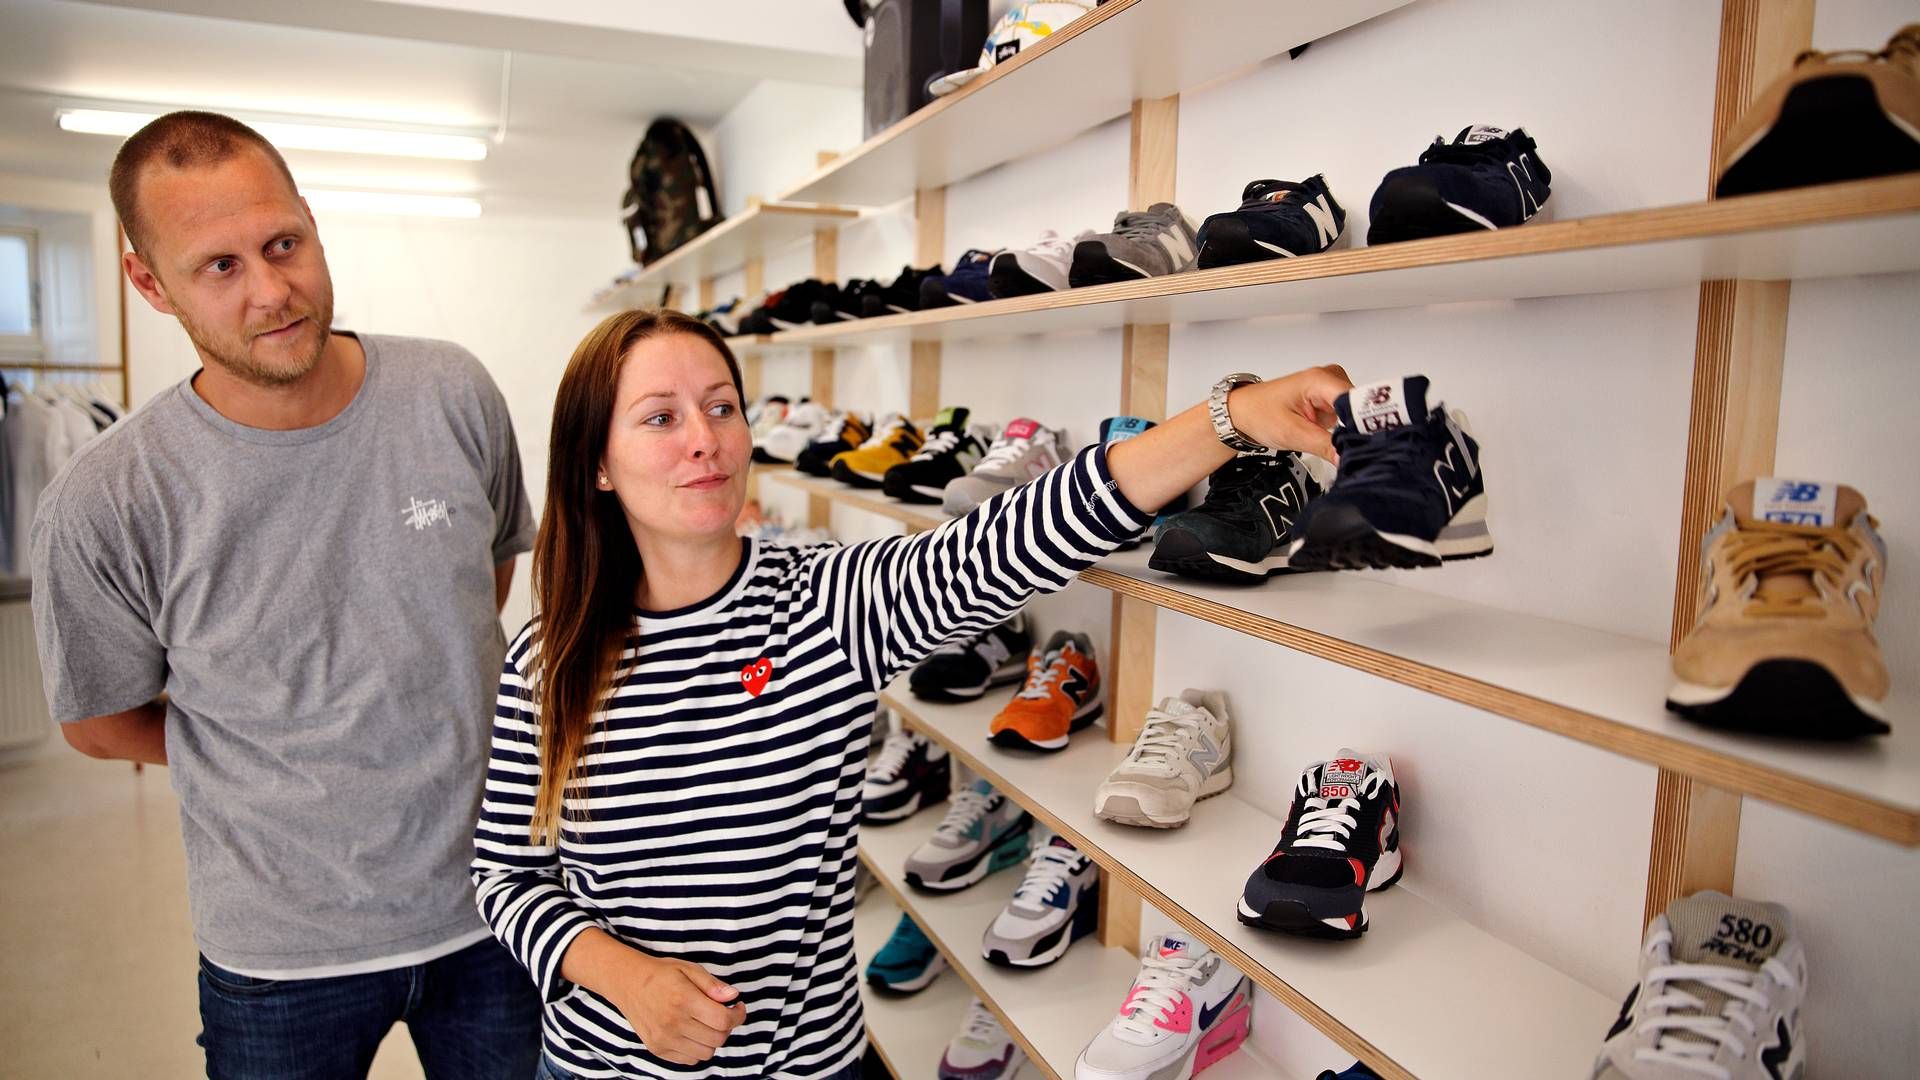 Adm. direktør Stine Lindholm Pedersen og Tommas Rubini Olsen stiftede i 2004 sneakersvirksomheden Naked. I 2021 solgte de majoriteten til den franske detailkoncern Groupe Courier. | Foto: Jens Dresling